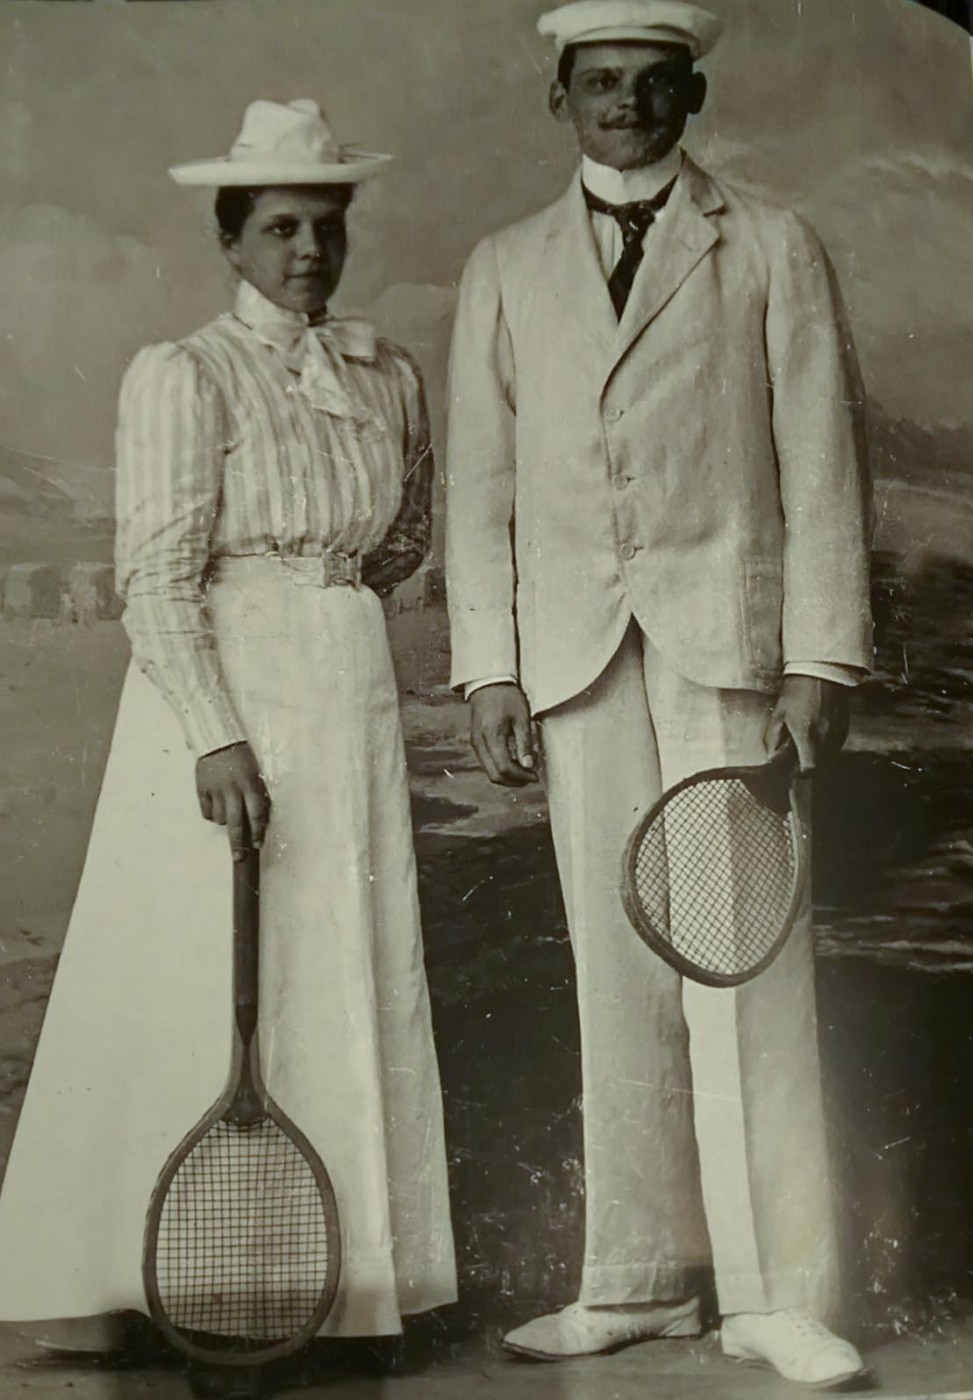 1900年代のテニスウェア。紳士、淑女のスポーツ。ここから鹿の子ポロまでの遠い道のり。